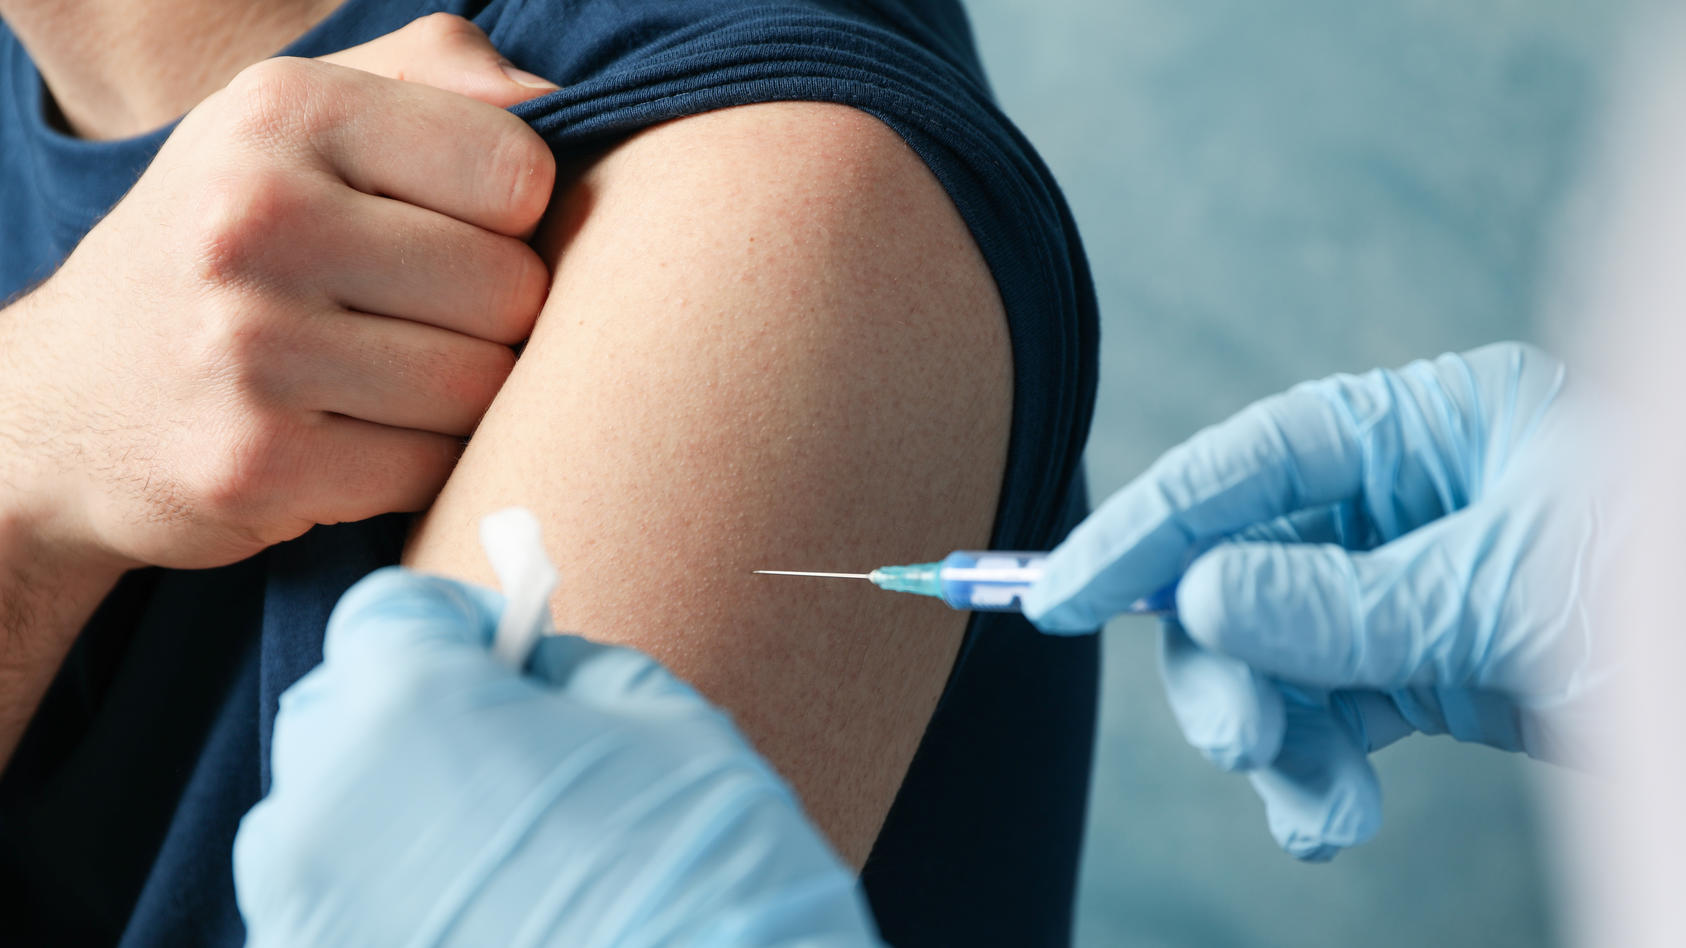 Ein Patient erhält per Spritze eine Impfung in den Oberarm.